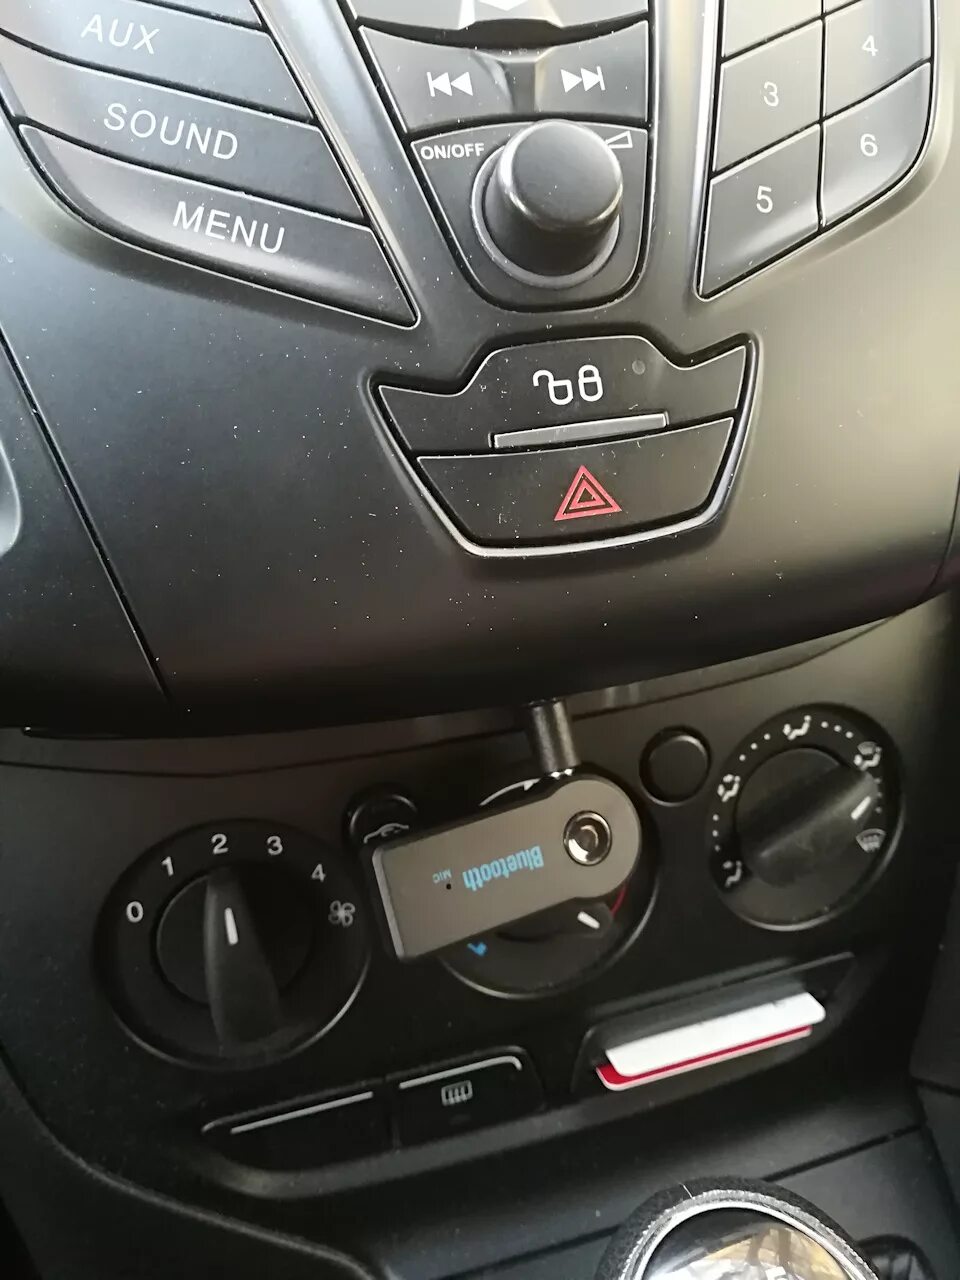 Блютуз в Форд фокус 3. Ford Focus 3 магнитола блютуз. Ford Focus 3 Bluetooth адаптер. Блютуз в Форд фокус 3 2013 года.